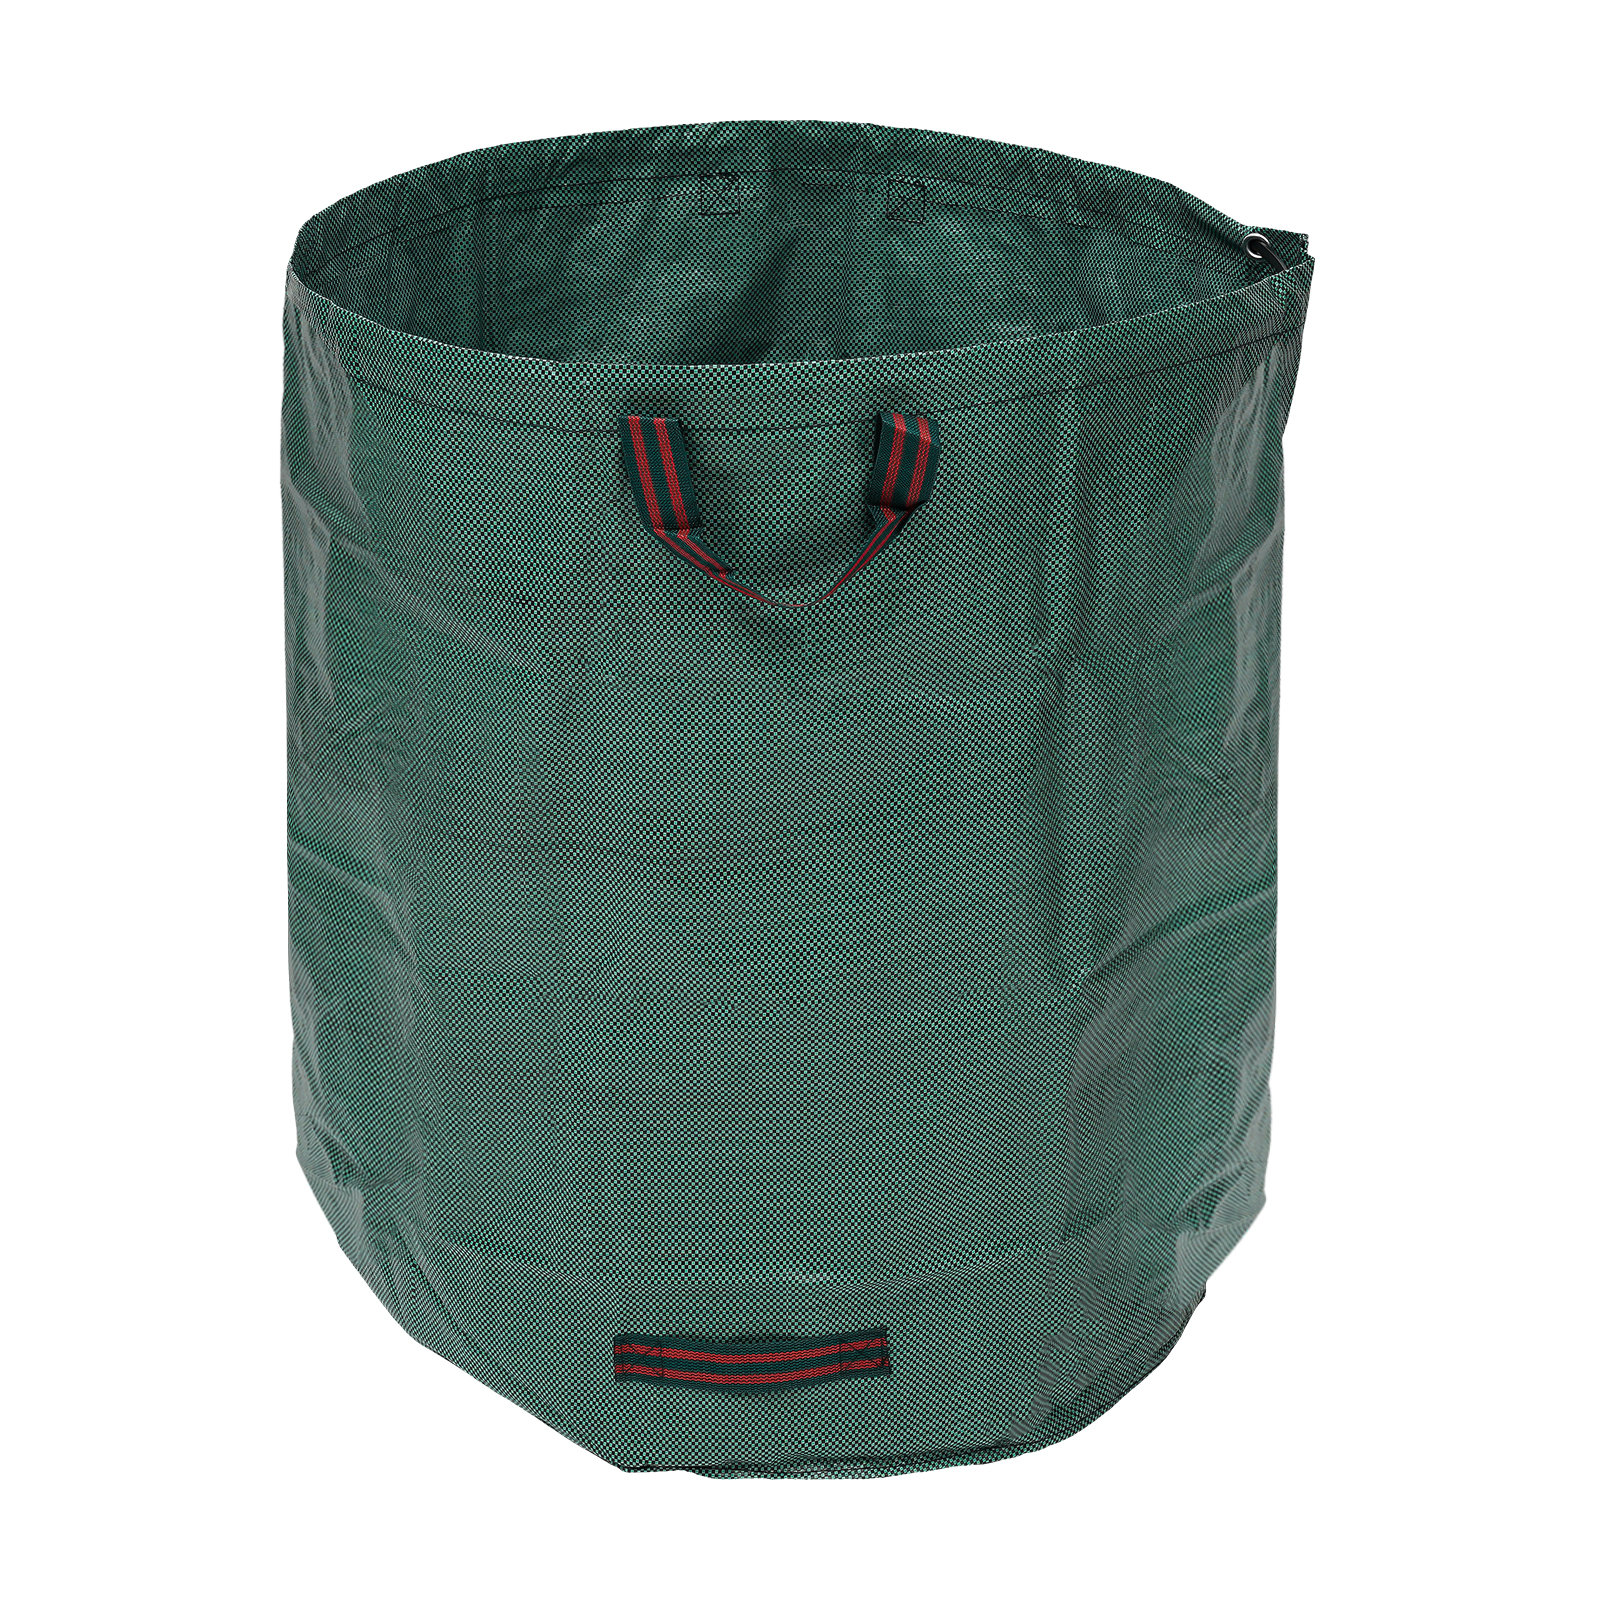 https://assets.wfcdn.com/im/37526439/compr-r85/2609/260978489/132-gallon-leaf-waste-bag-extra-large-reuseable-gardening-bag-trash-bag.jpg